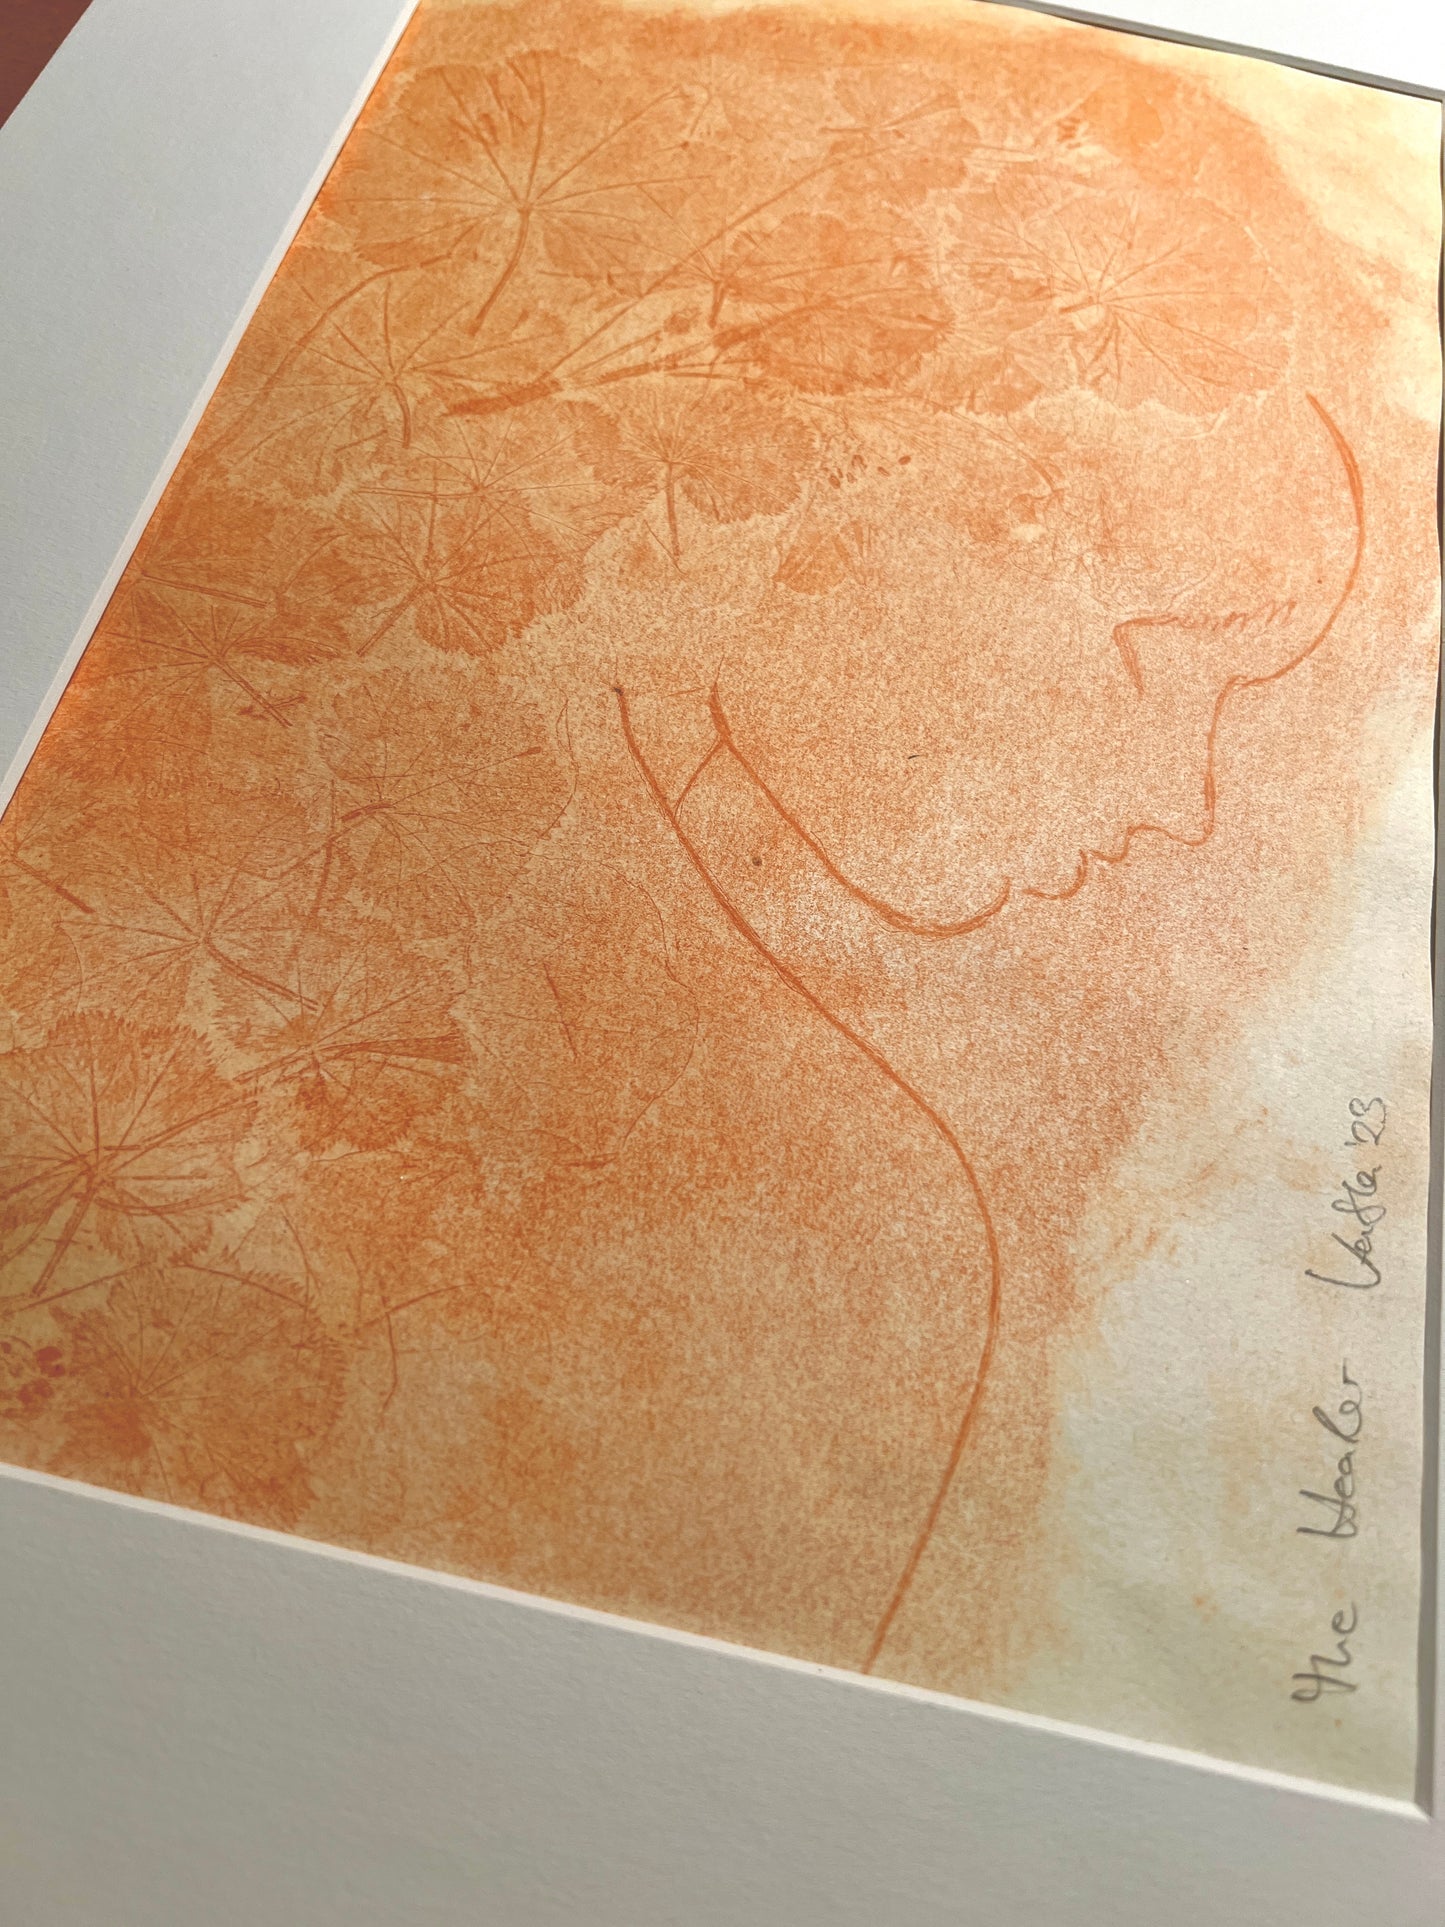 DIE HEILERIN - FRAUENMANTEL Originaldruckgrafik Radierung Vernis mou 30x40 cm